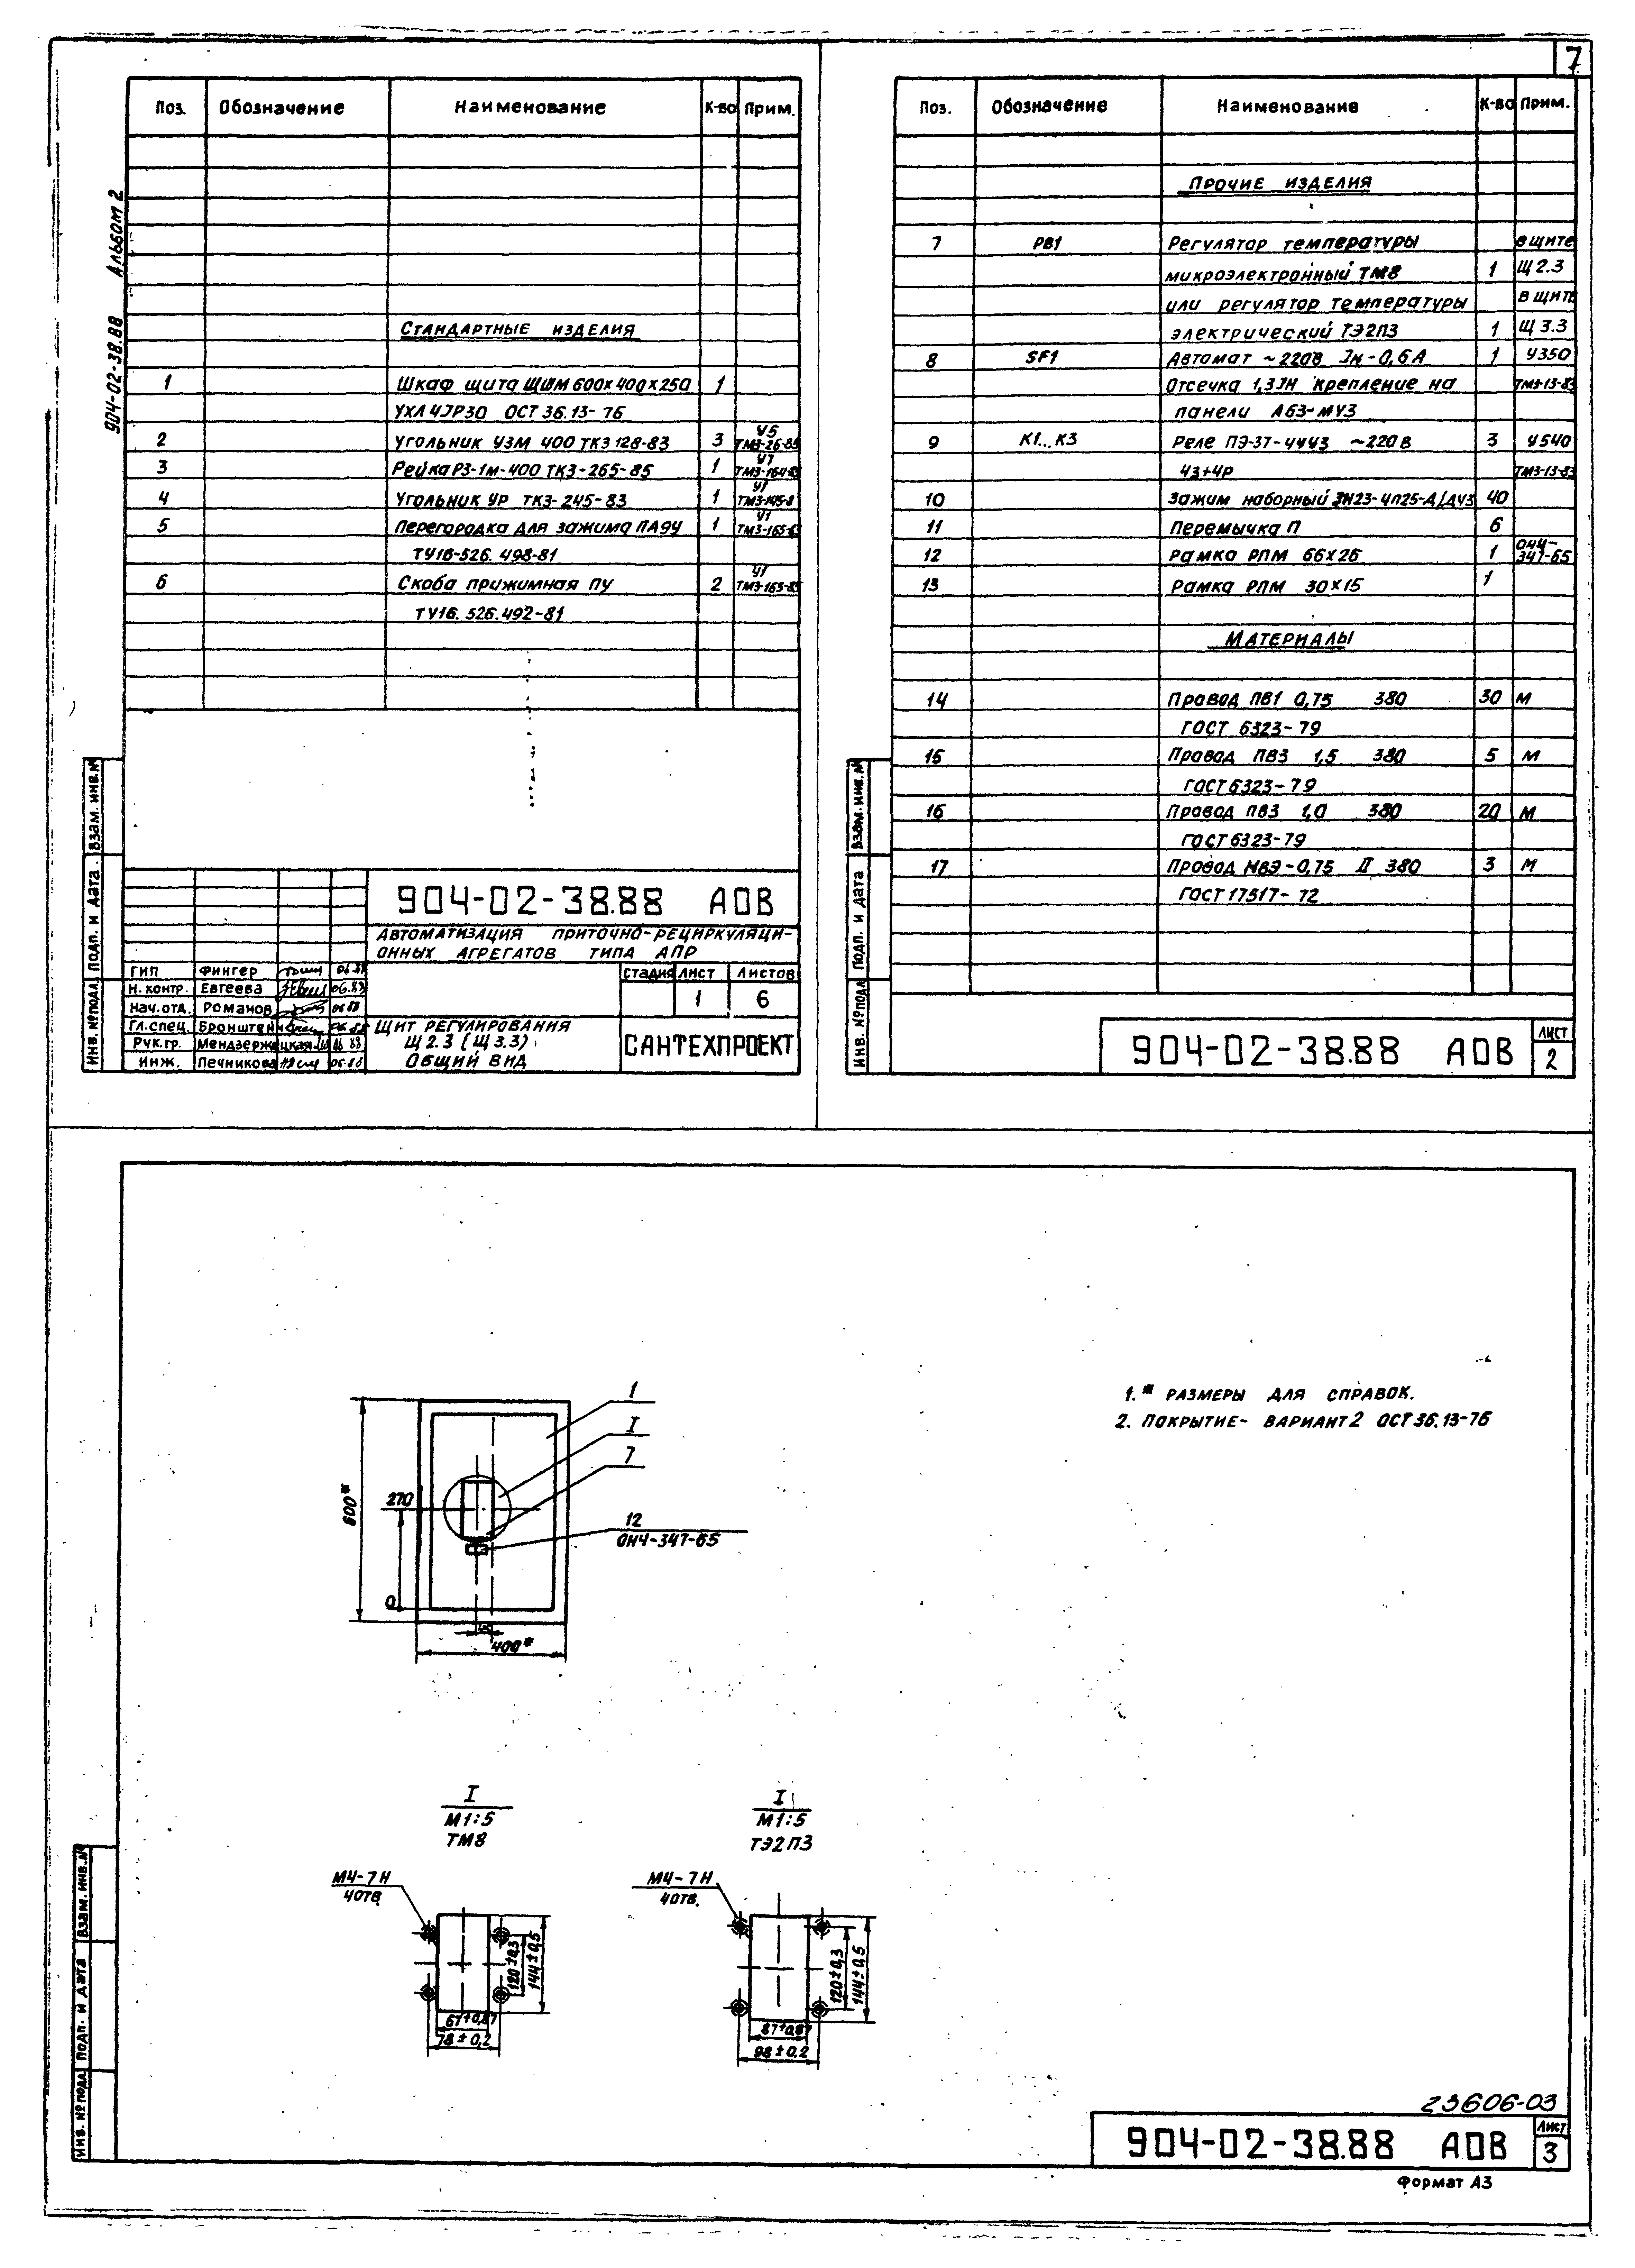 Типовые материалы для проектирования 904-02-38.88